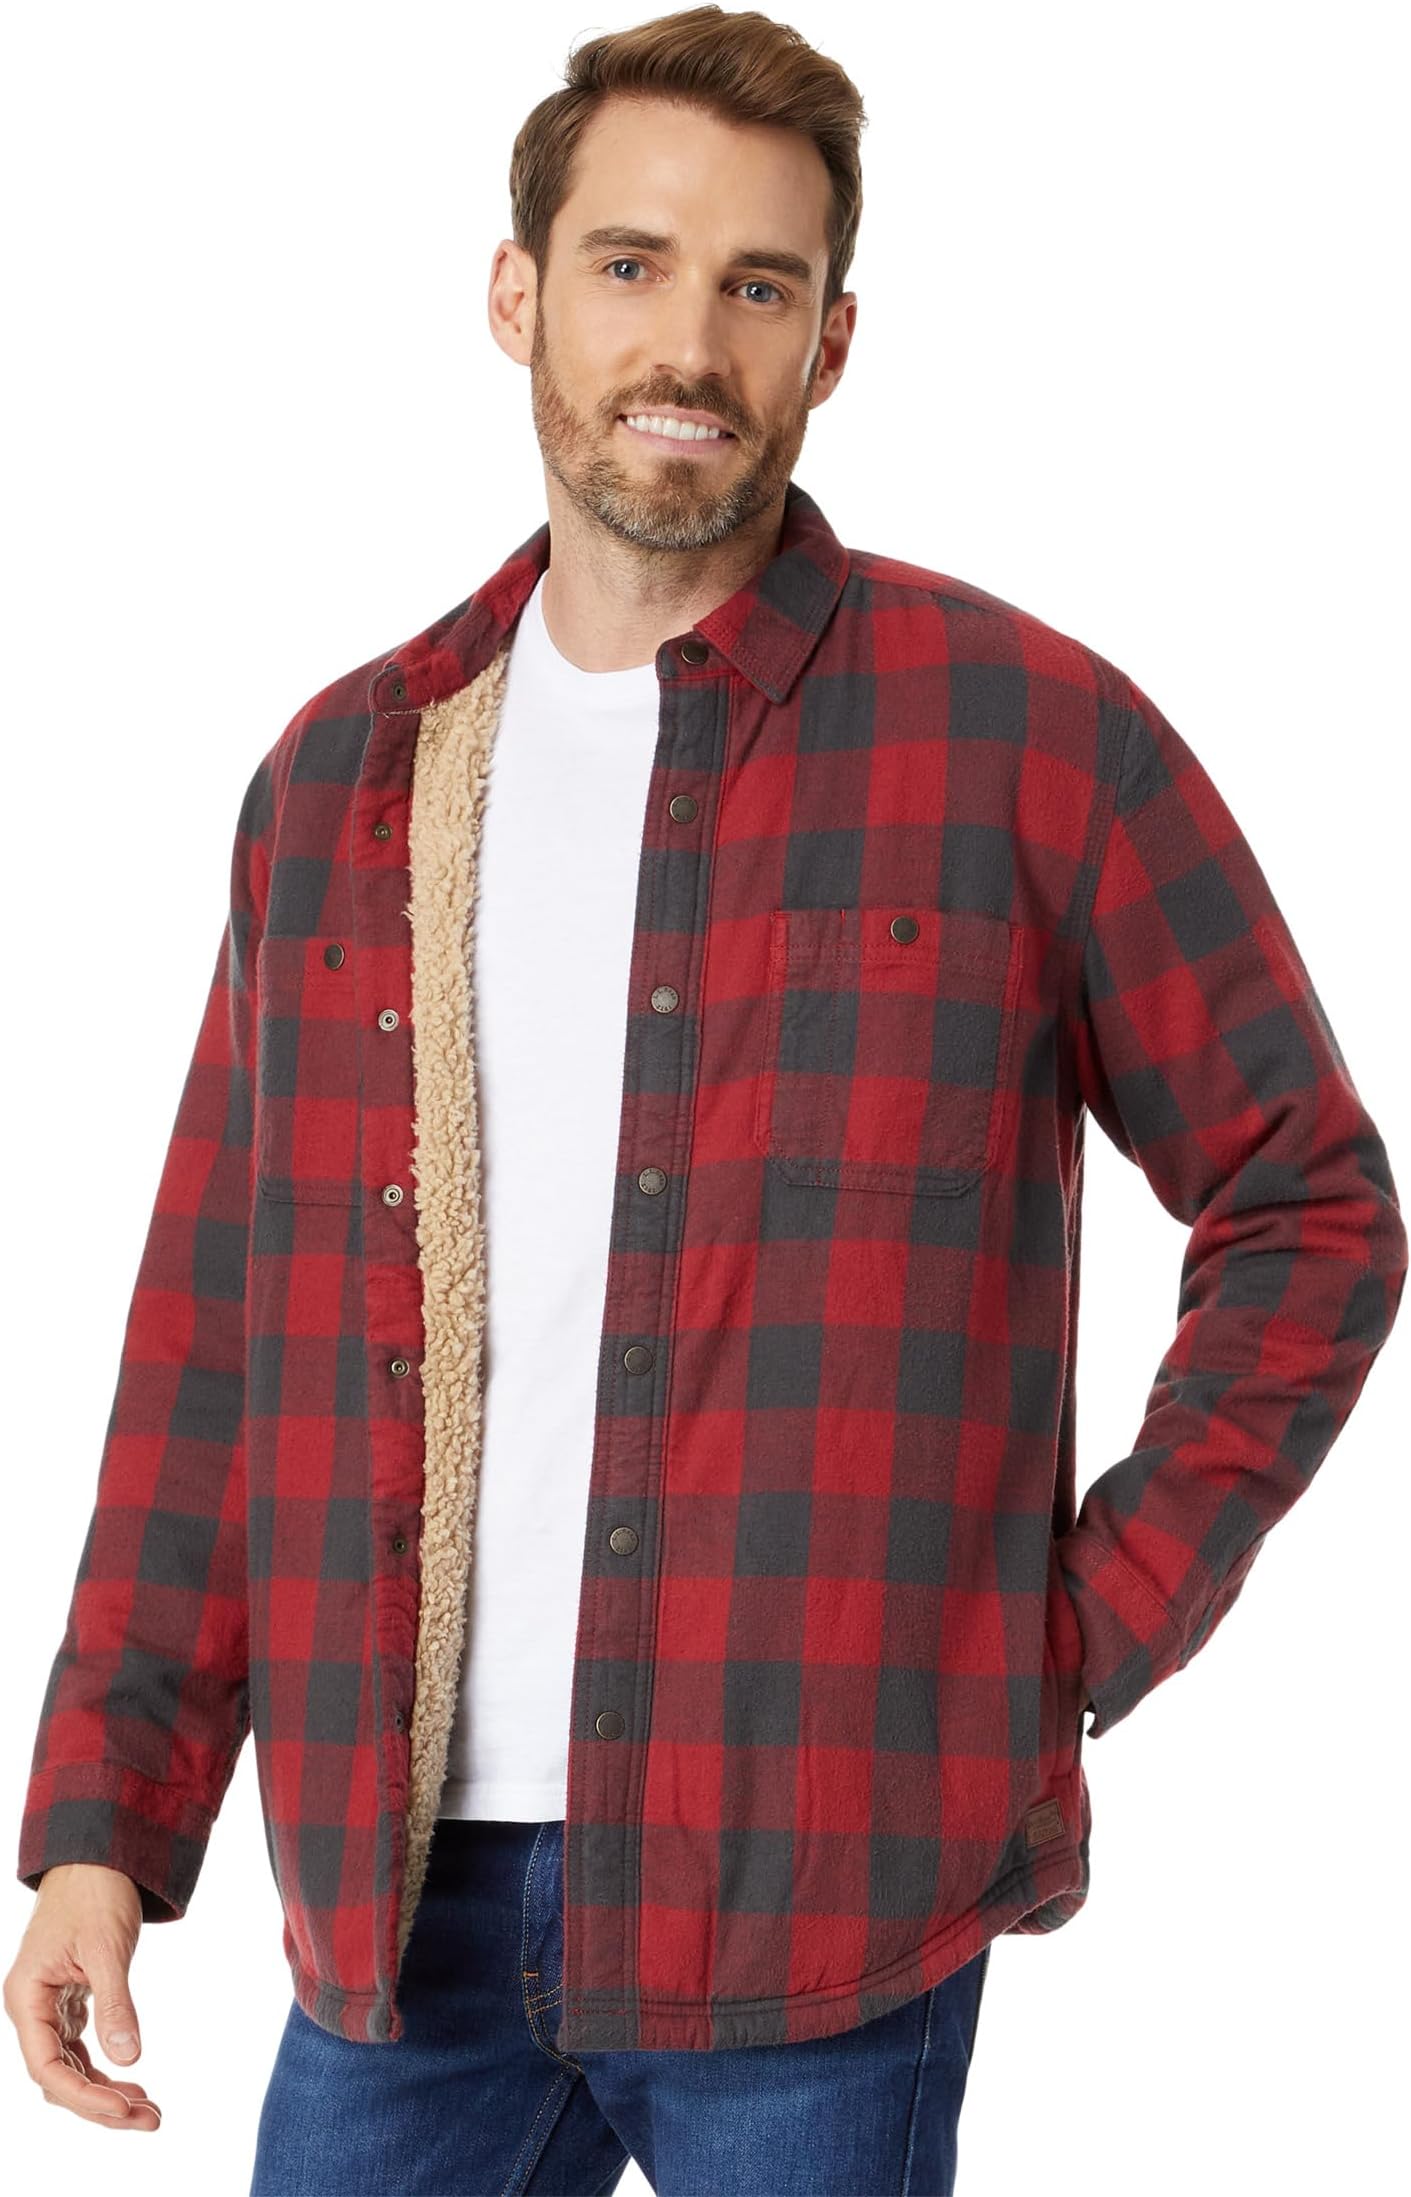 Рубашка в шотландскую клетку на подкладке из шерпы с длинными рукавами, стандартная L.L.Bean, цвет Vintage Red Rob Roy скотт вальтер rob roy